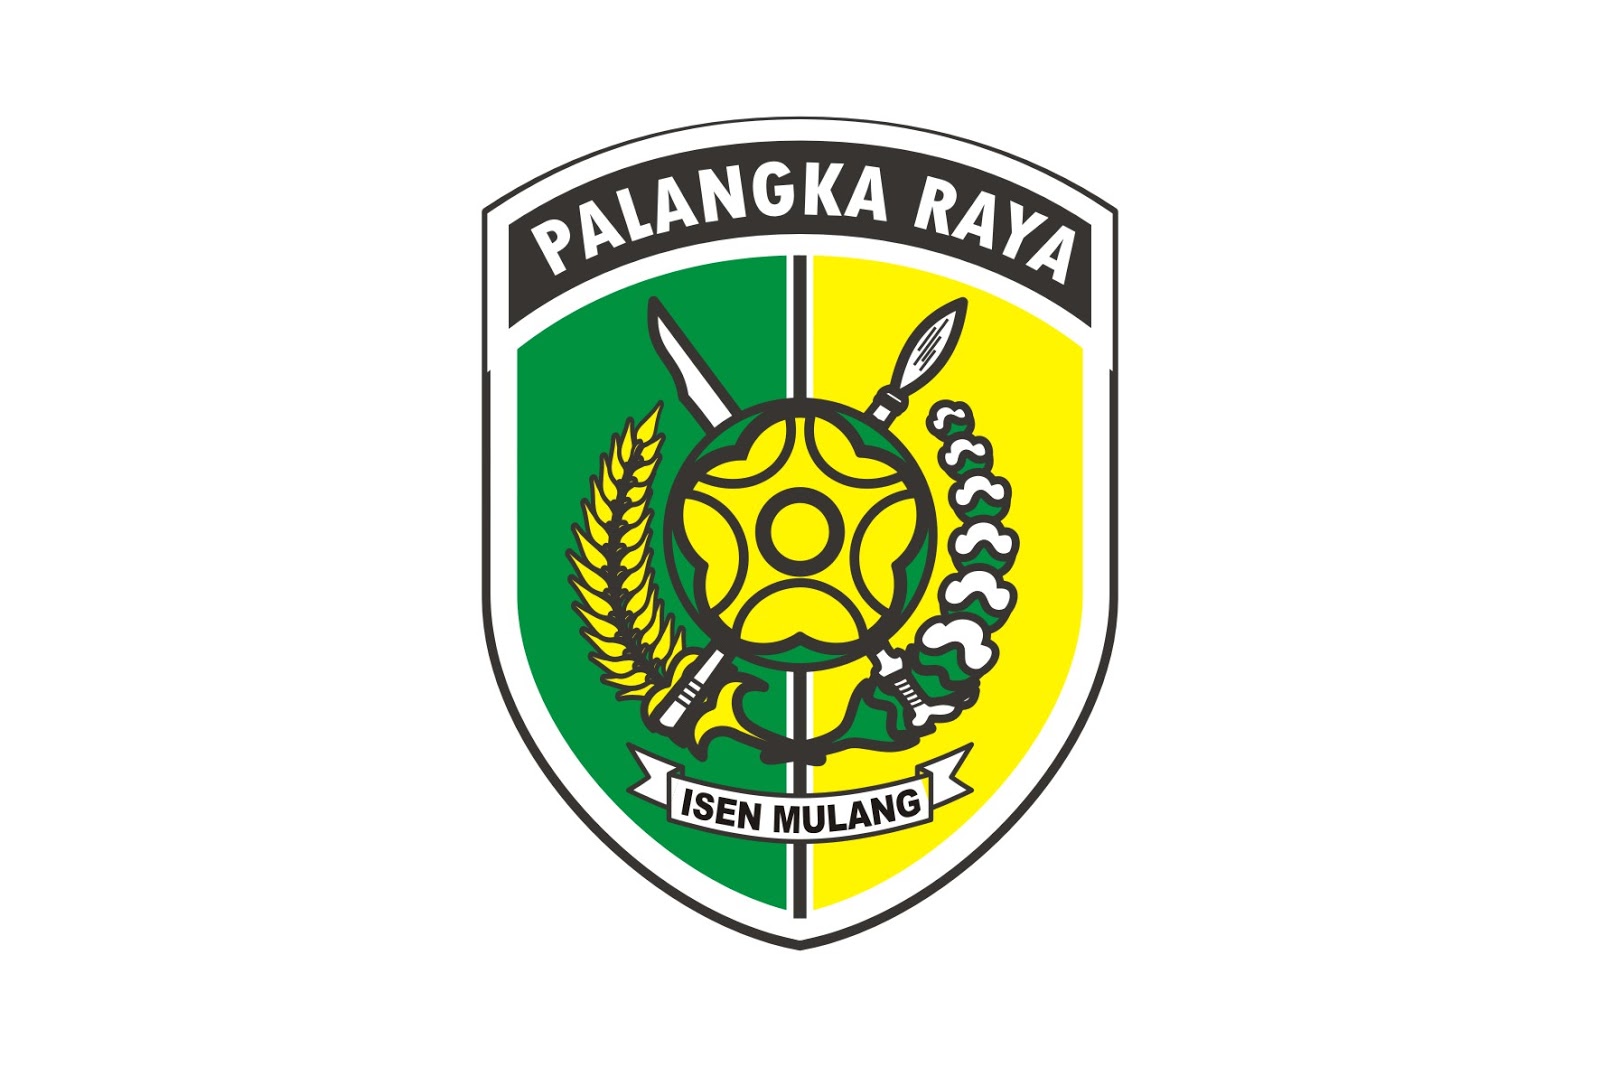  Kota  Palangka Raya  Logo 